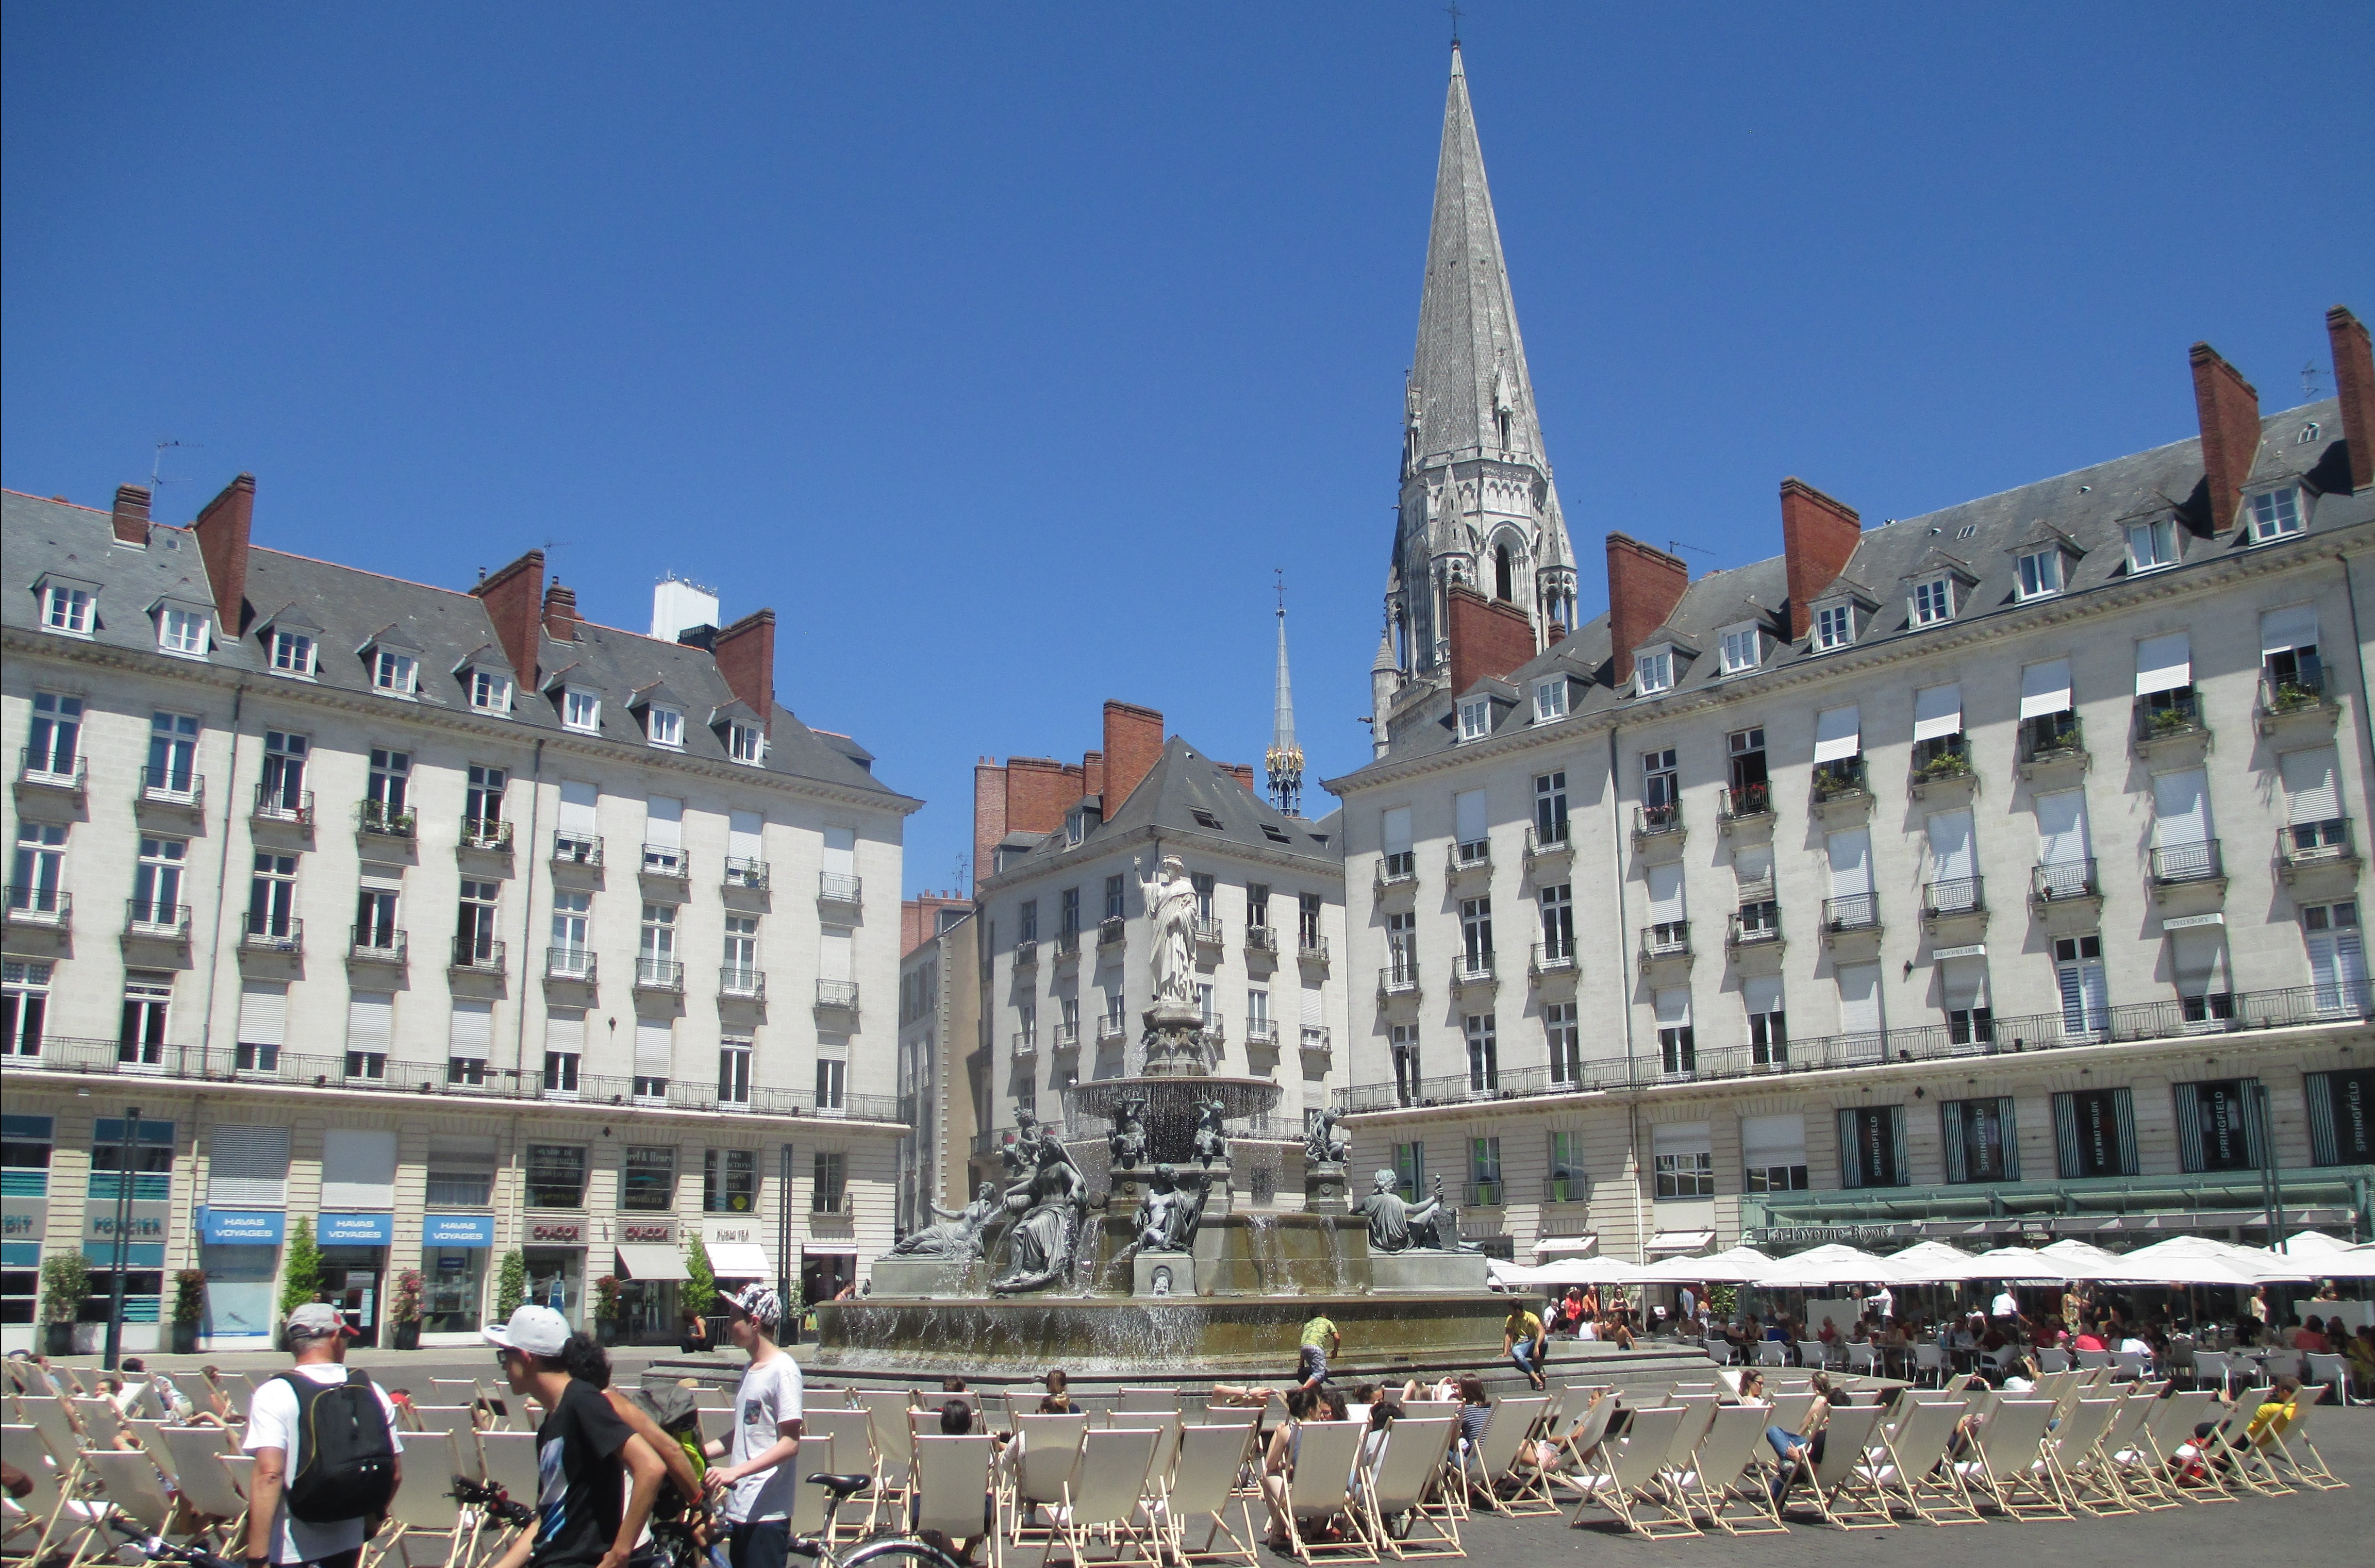 Les comptes Instagram à suivre à Nantes pour découvrir la Cité des Ducs